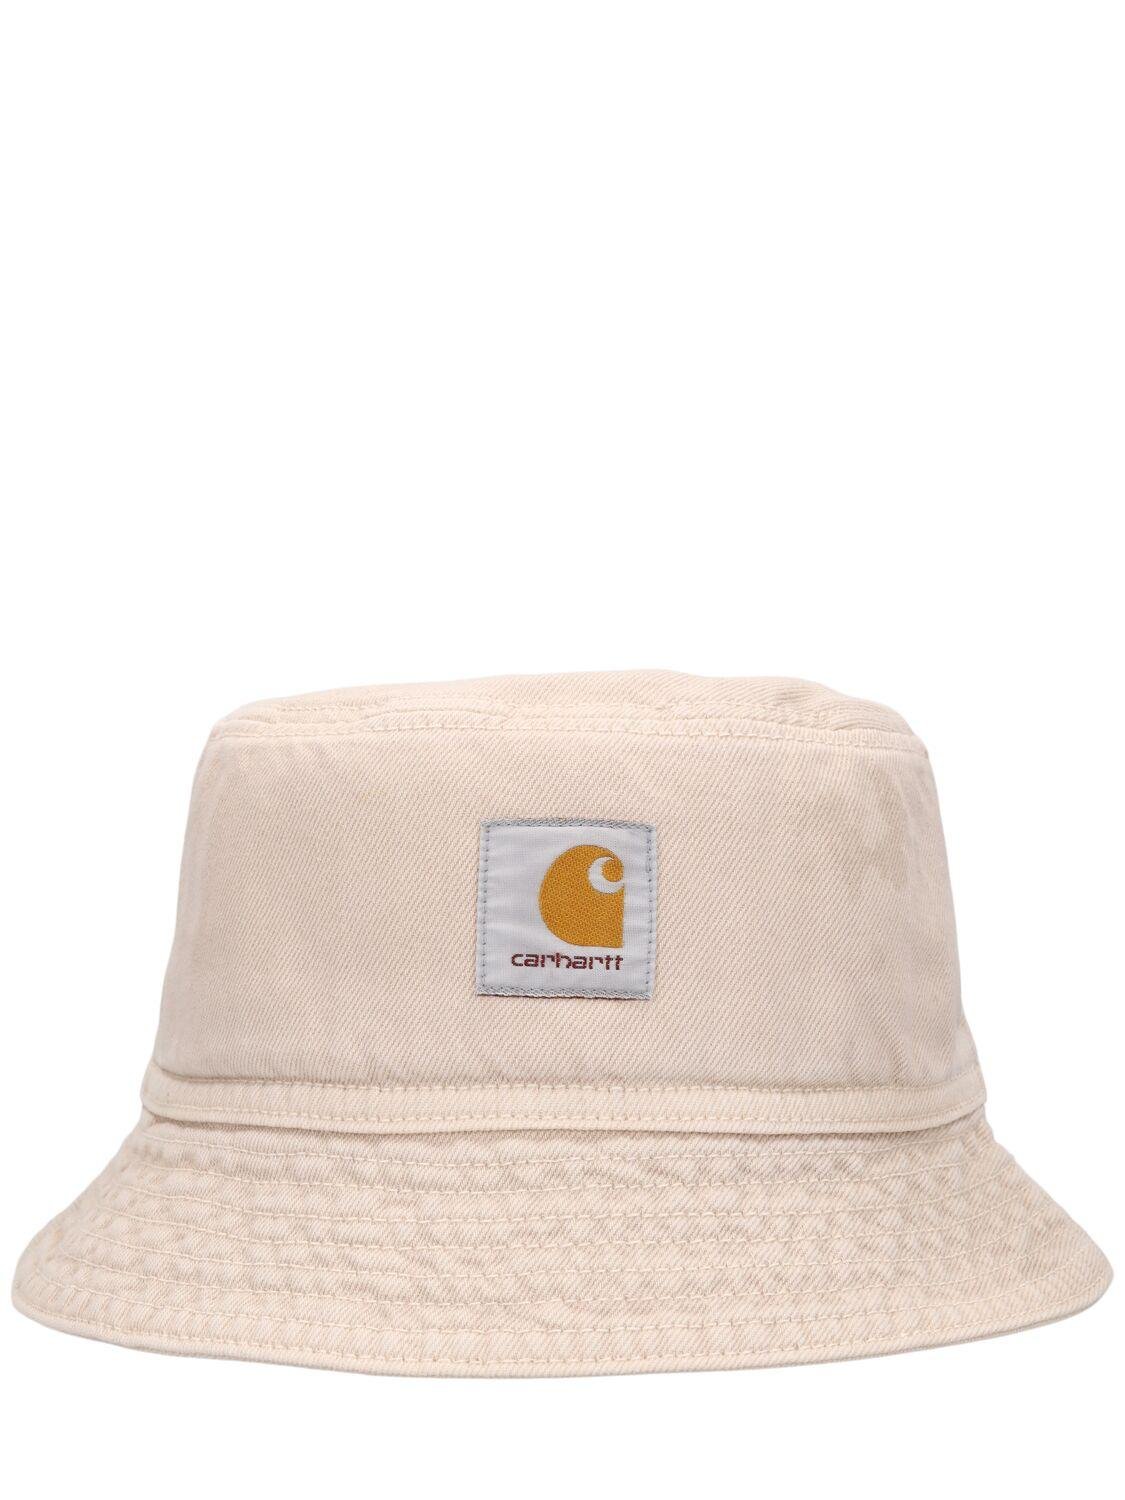 Garrison Bucket Hat by CARHARTT WIP